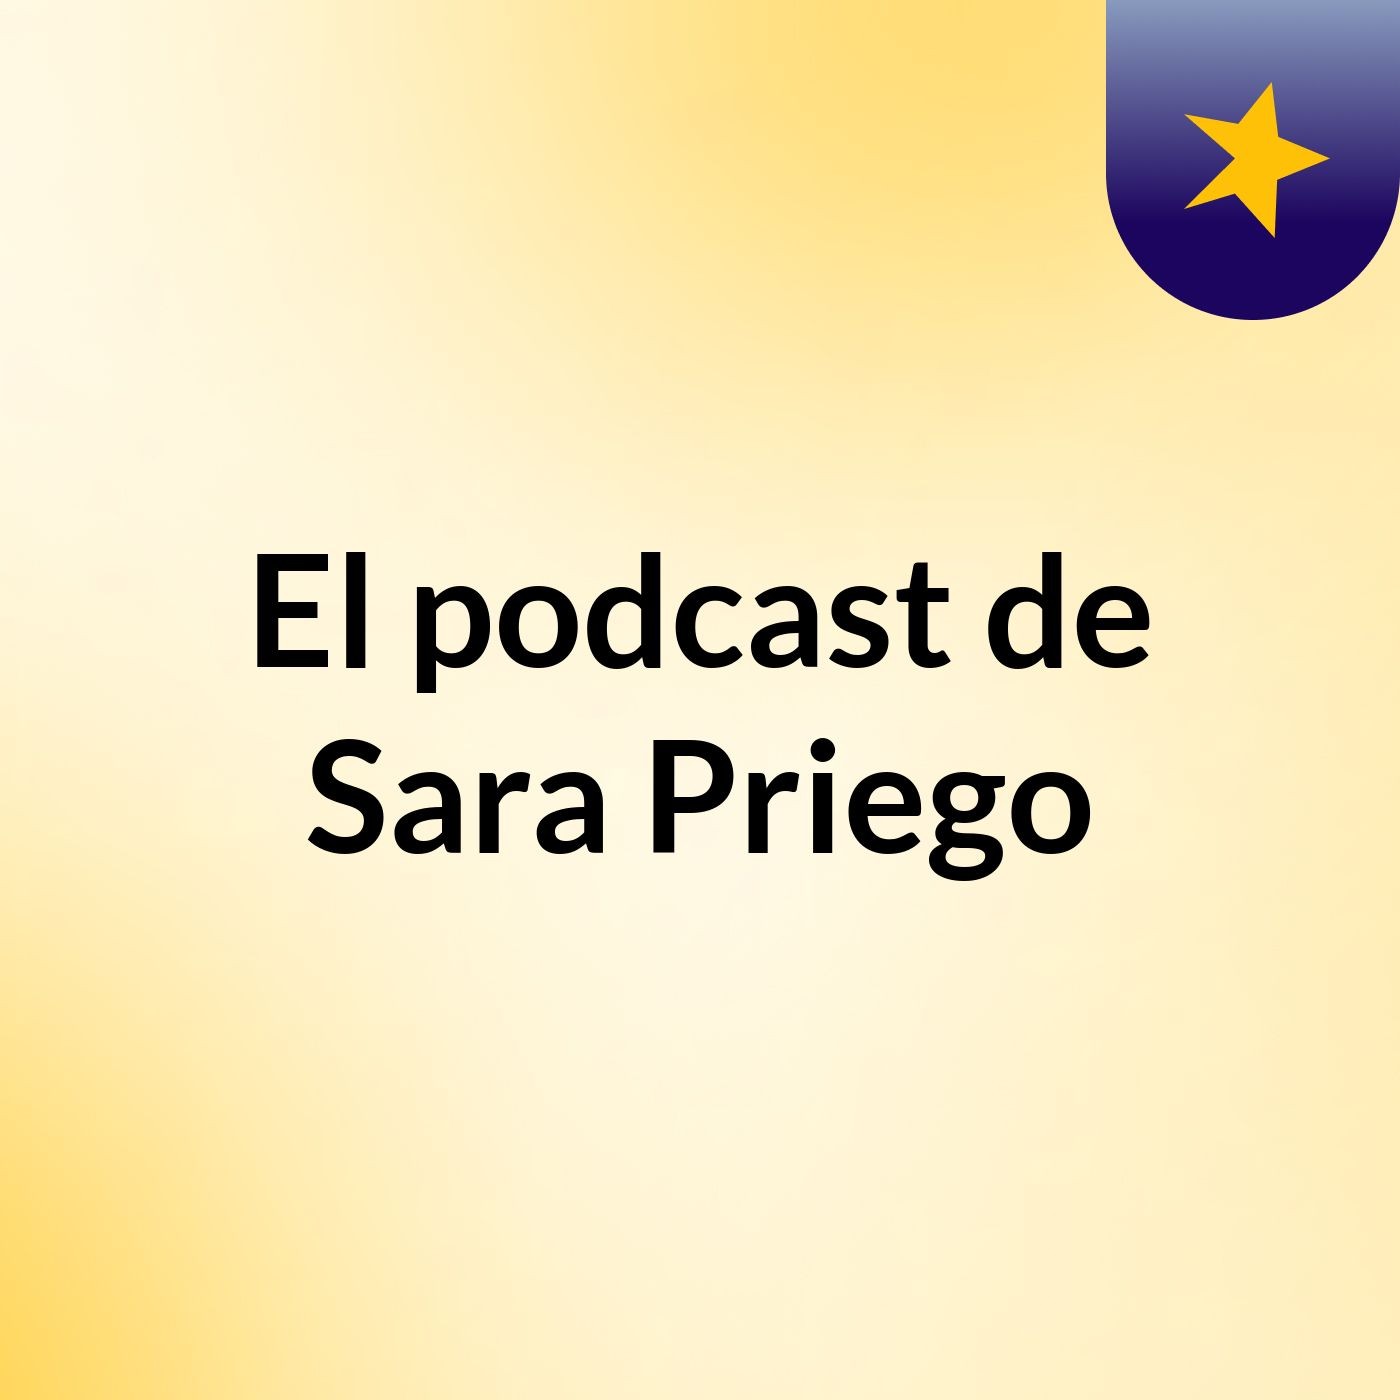 El podcast de Sara Priego